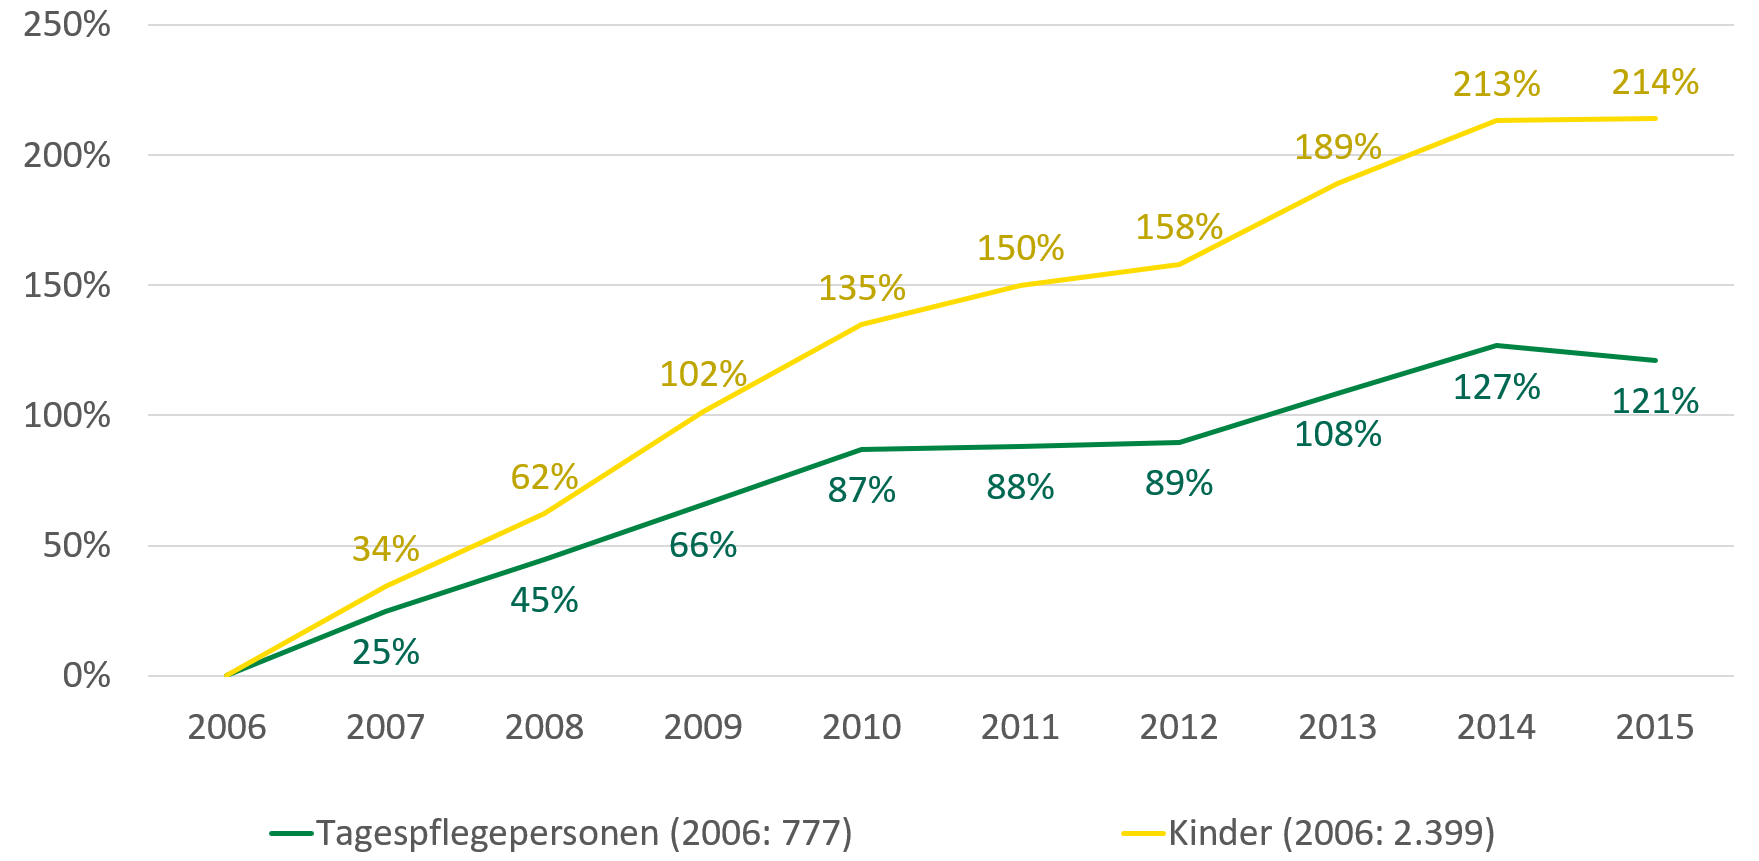 Im Jahr 2006 standen 777 Tagespflegepersonen 2.399 Kindern gegenüber. 2015 war die Zahl der Tagespflegepersonen um 121 Prozent angestiegen, die Zahl der Kinder allerdings um 214 Prozent.